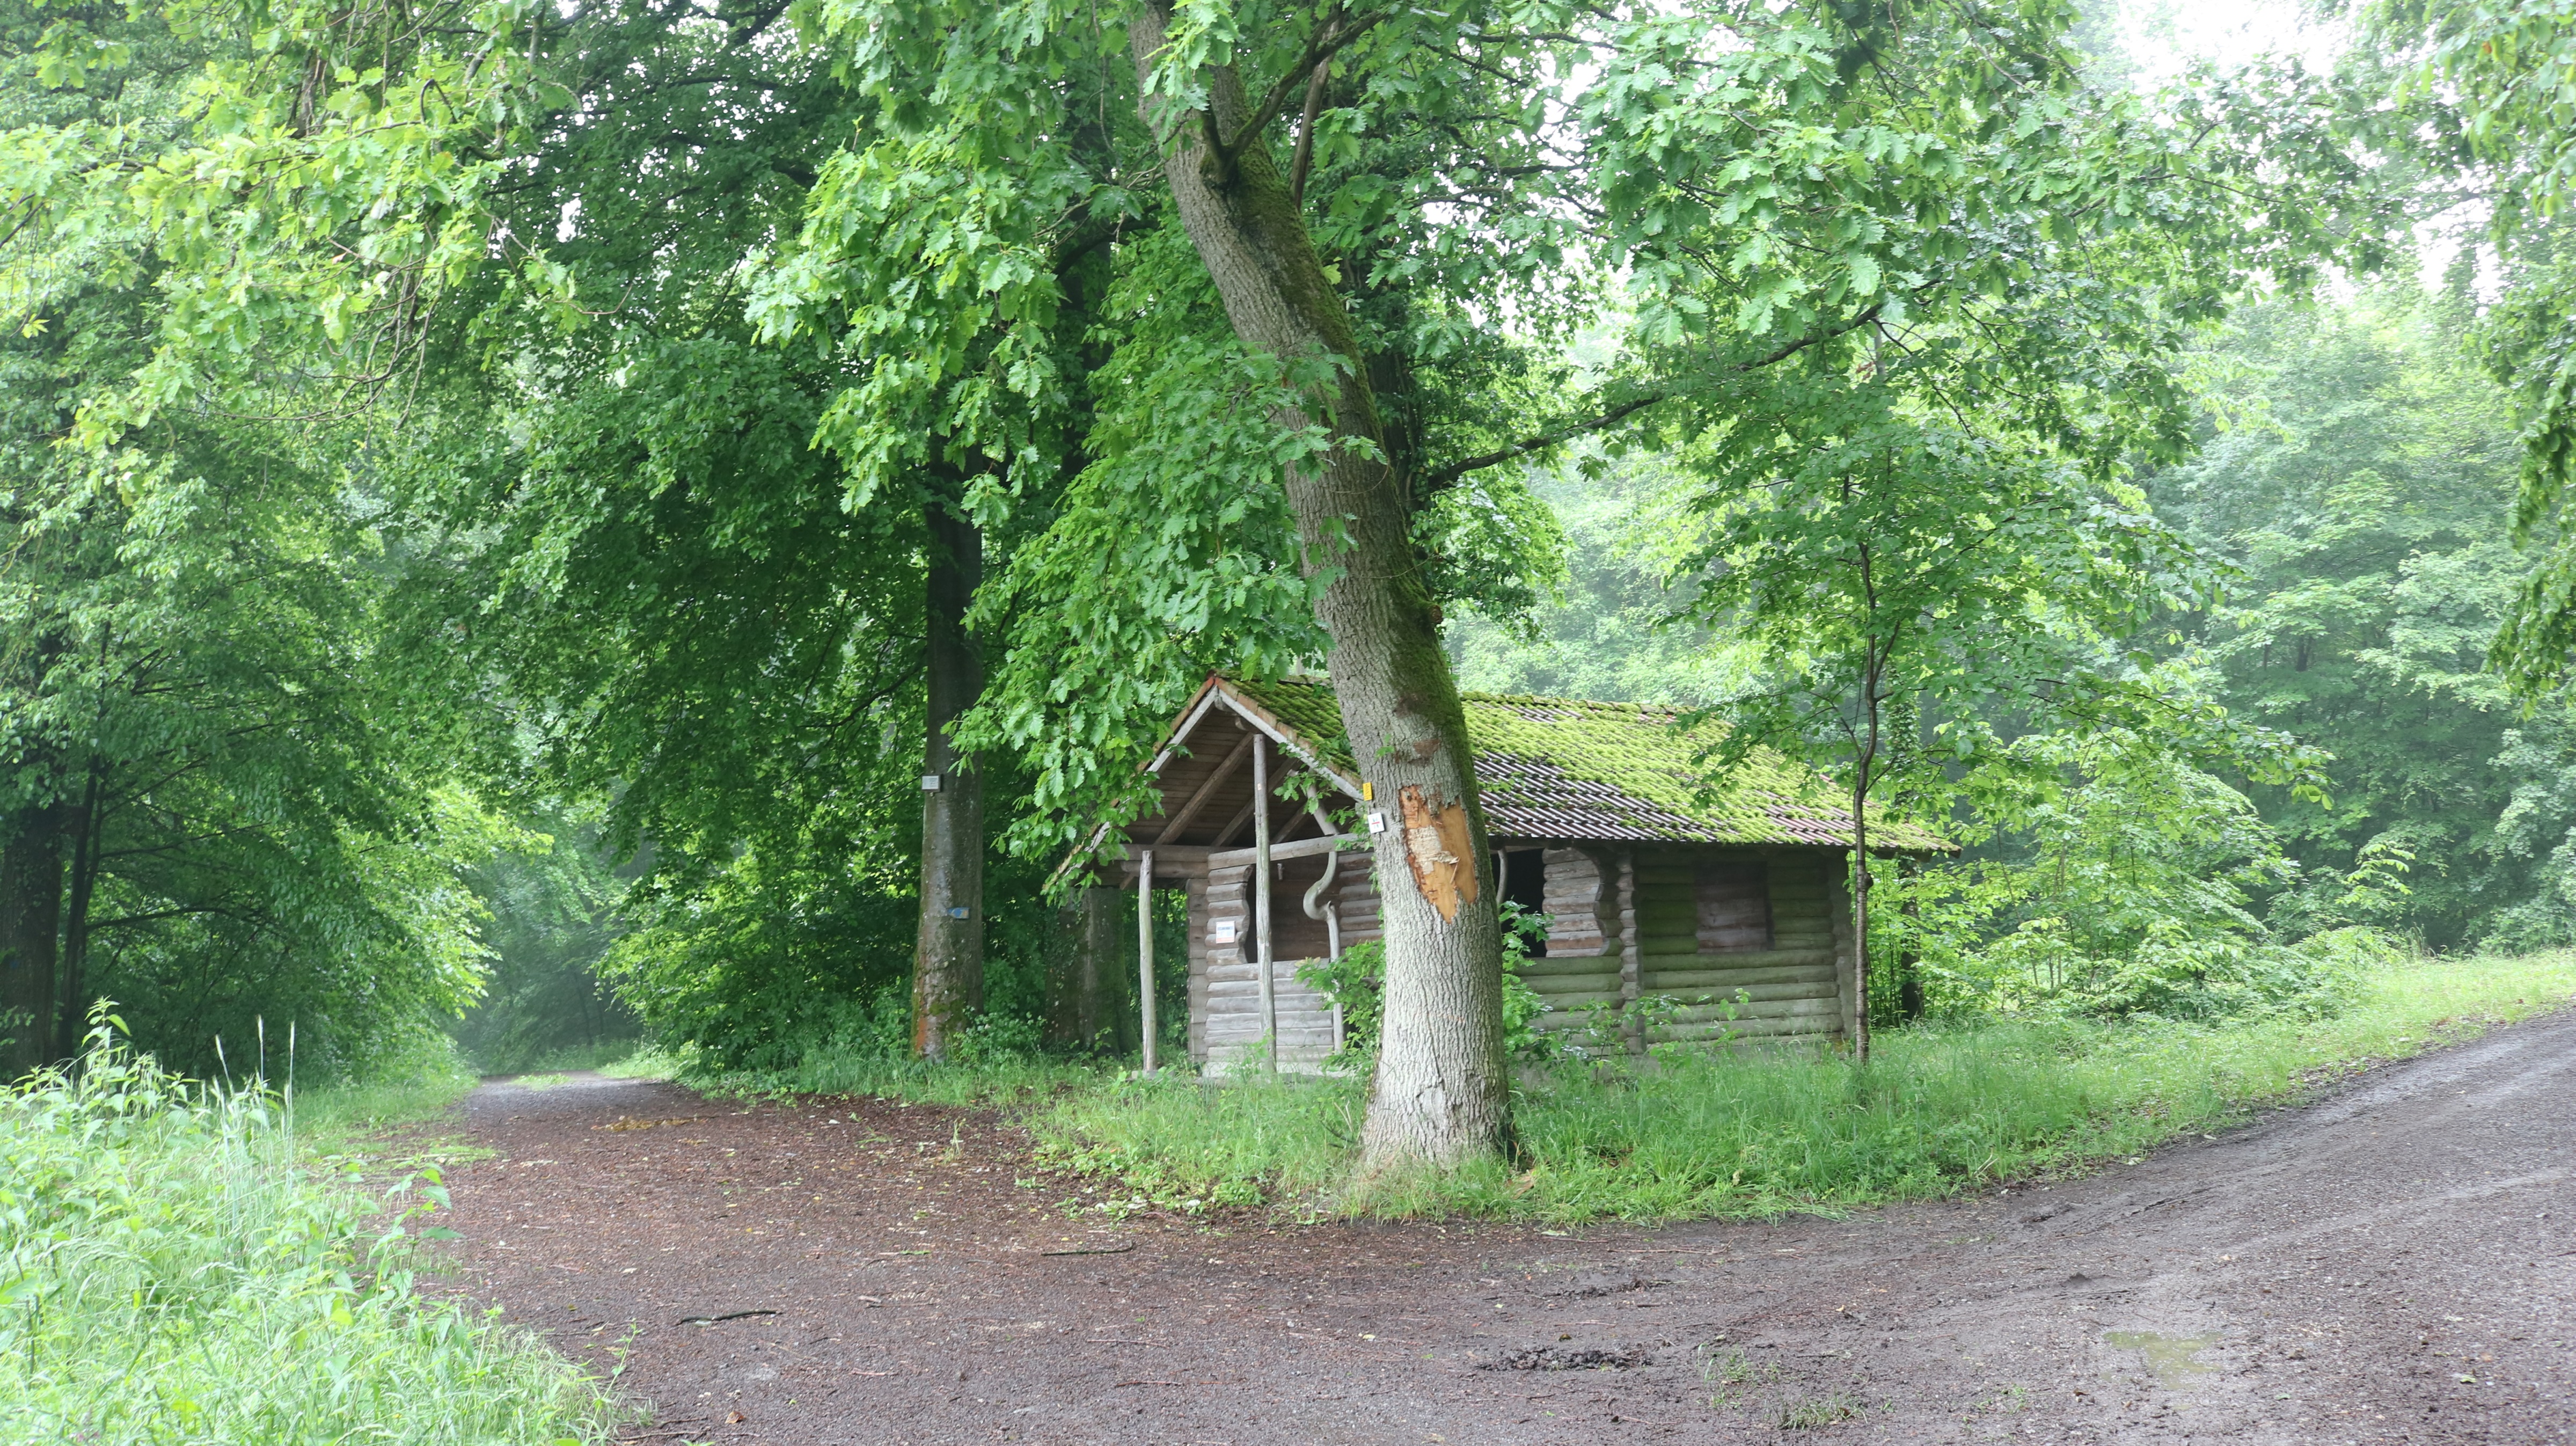  Die Herrmann-Enderle-Hütte steht im Bereich Waldersteig und markiert somit den Beginn des fraglichen Bereichs, der sich rund um die Hütte in beide Richtungen erstreckt. 